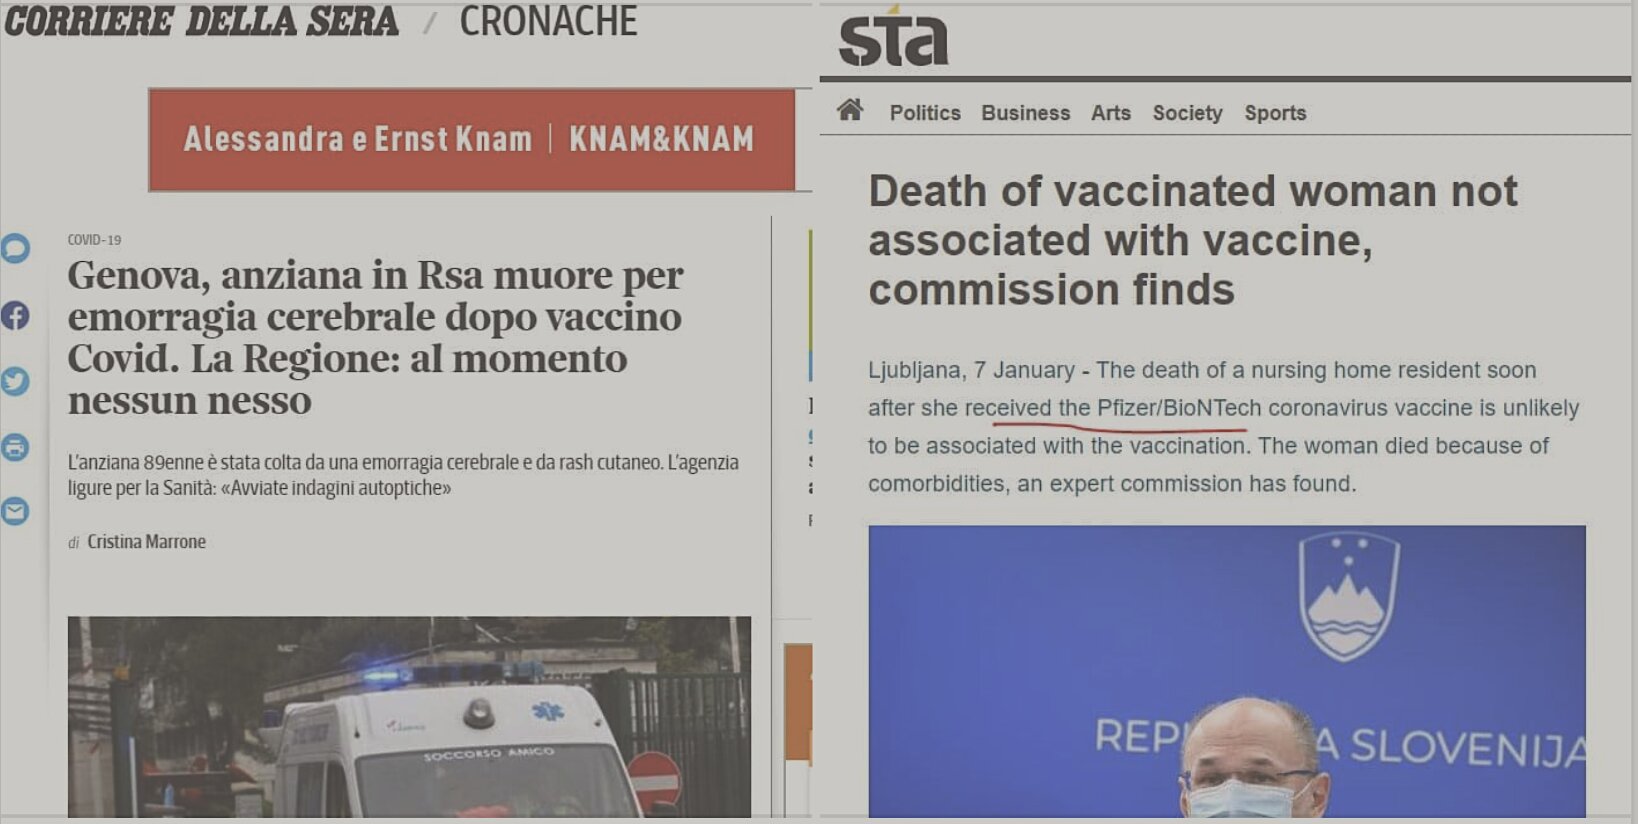 Άλλοι 2 θάνατοι ηλικιωμένων γυναικών μετά τον εμβολιασμό με Pfizer σε Γηροκομεία: 1 ηλικιωμένη πέθανε την επομένη στην Ιταλία και 1 στη Σλοβενία αμέσως μετά το εμβόλιο…